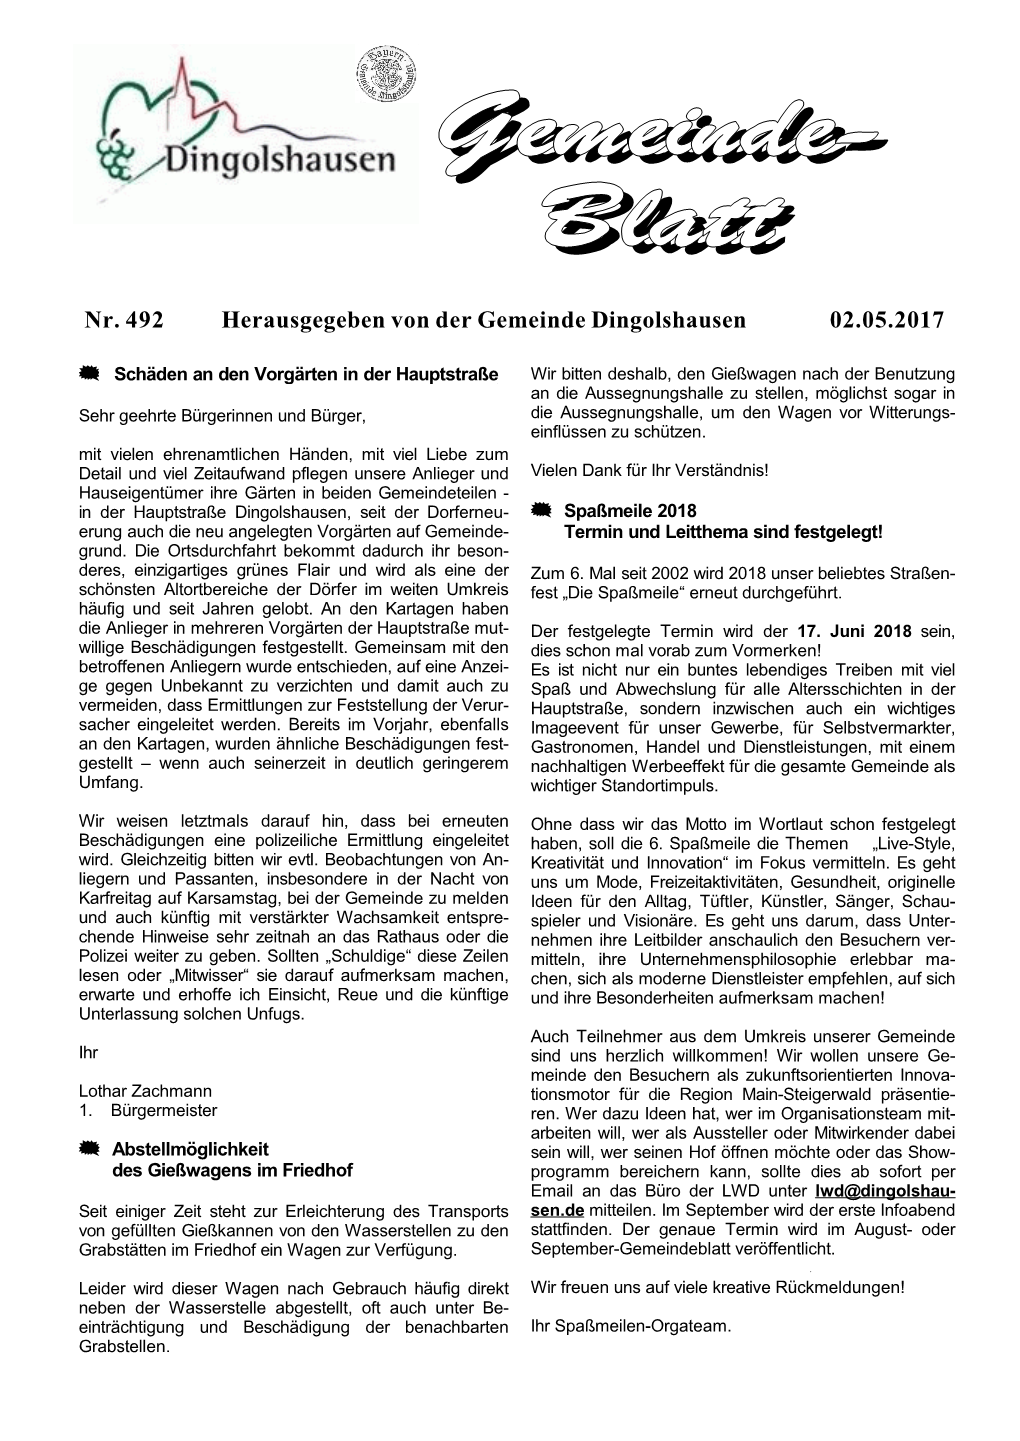 Nr. 492 Herausgegeben Von Der Gemeinde Dingolshausen 02.05.2017